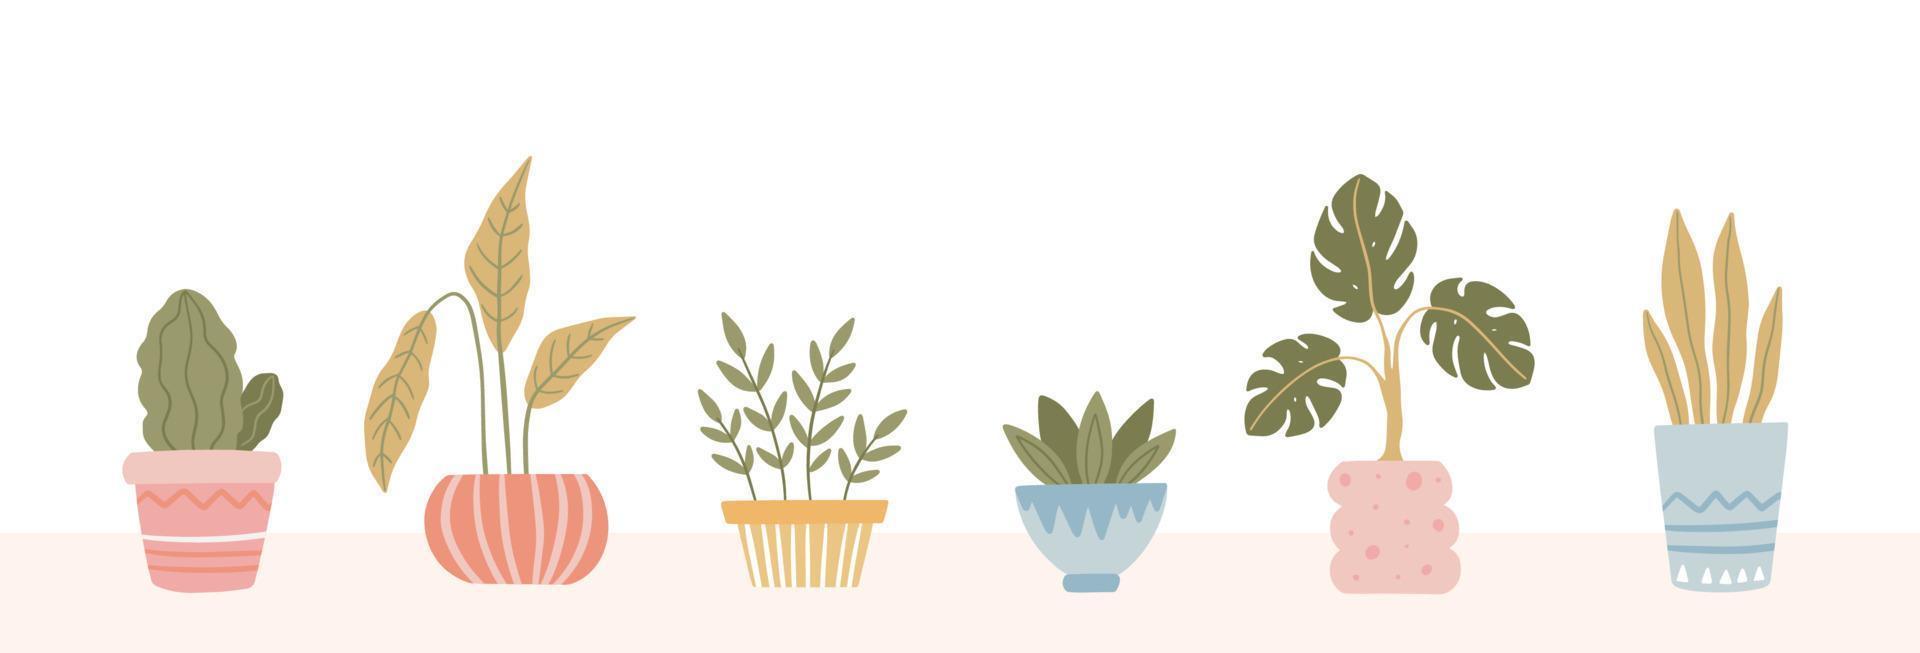 ensemble de plantes d'intérieur en pot de fleurs. plante d'intérieur dessinée à la main à la mode en pot. illustration vectorielle isolée sur fond blanc vecteur